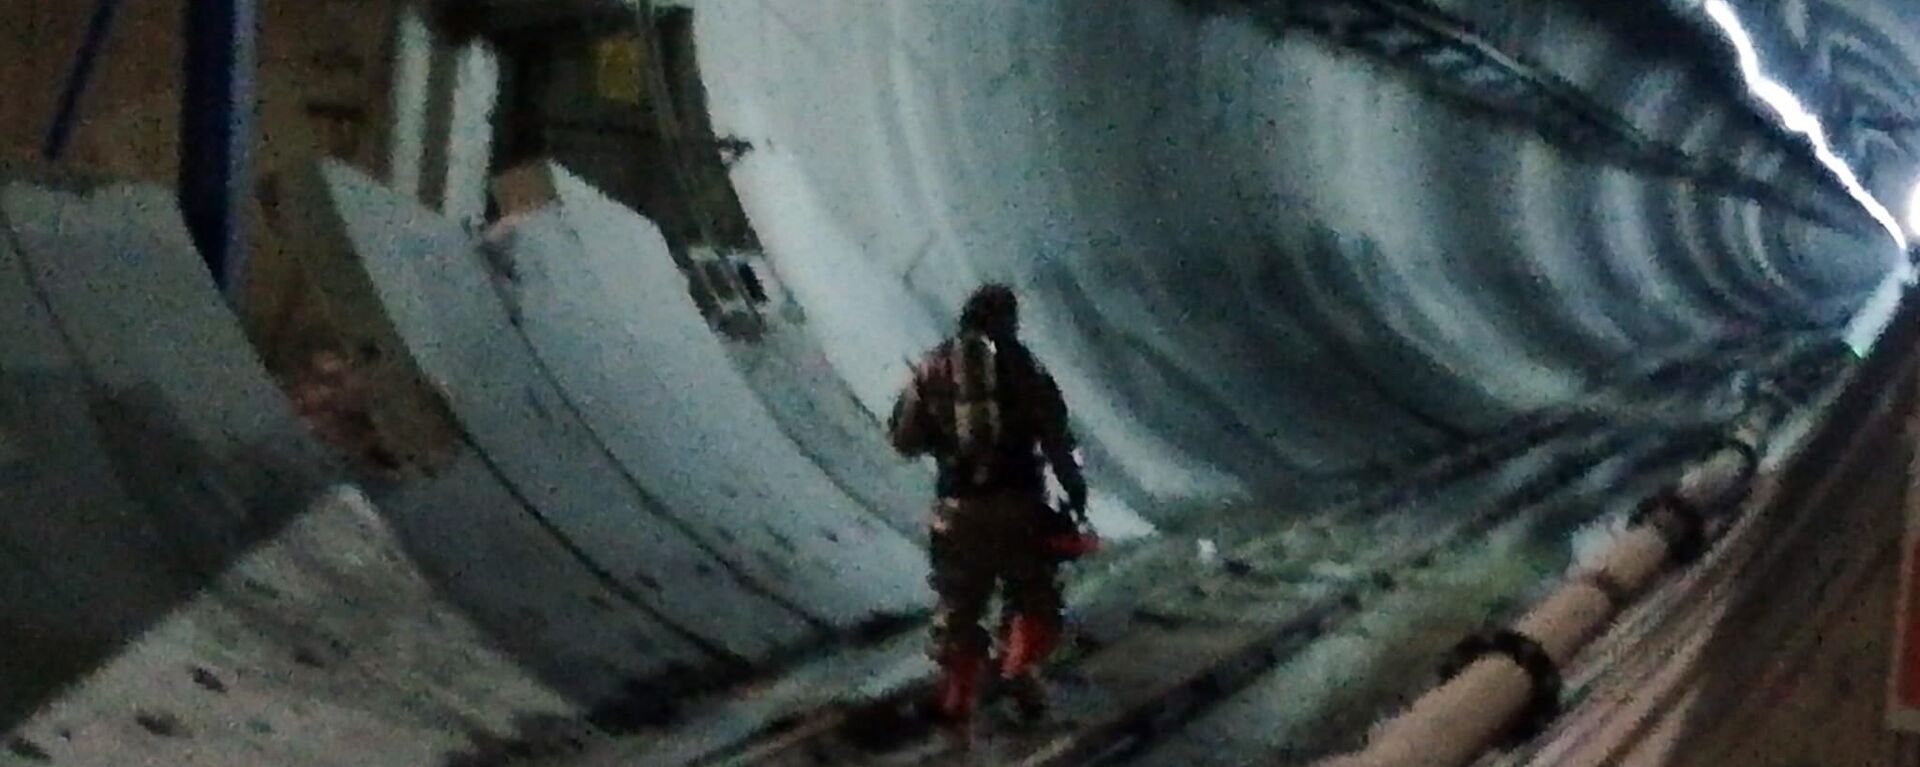 Diyarbakır’ın Silvan ilçesinde baraj inşaatında hidrojen sülfür tüpünün patlaması sonucu 18 işçi zehirlendi. - Sputnik Türkiye, 1920, 30.07.2022